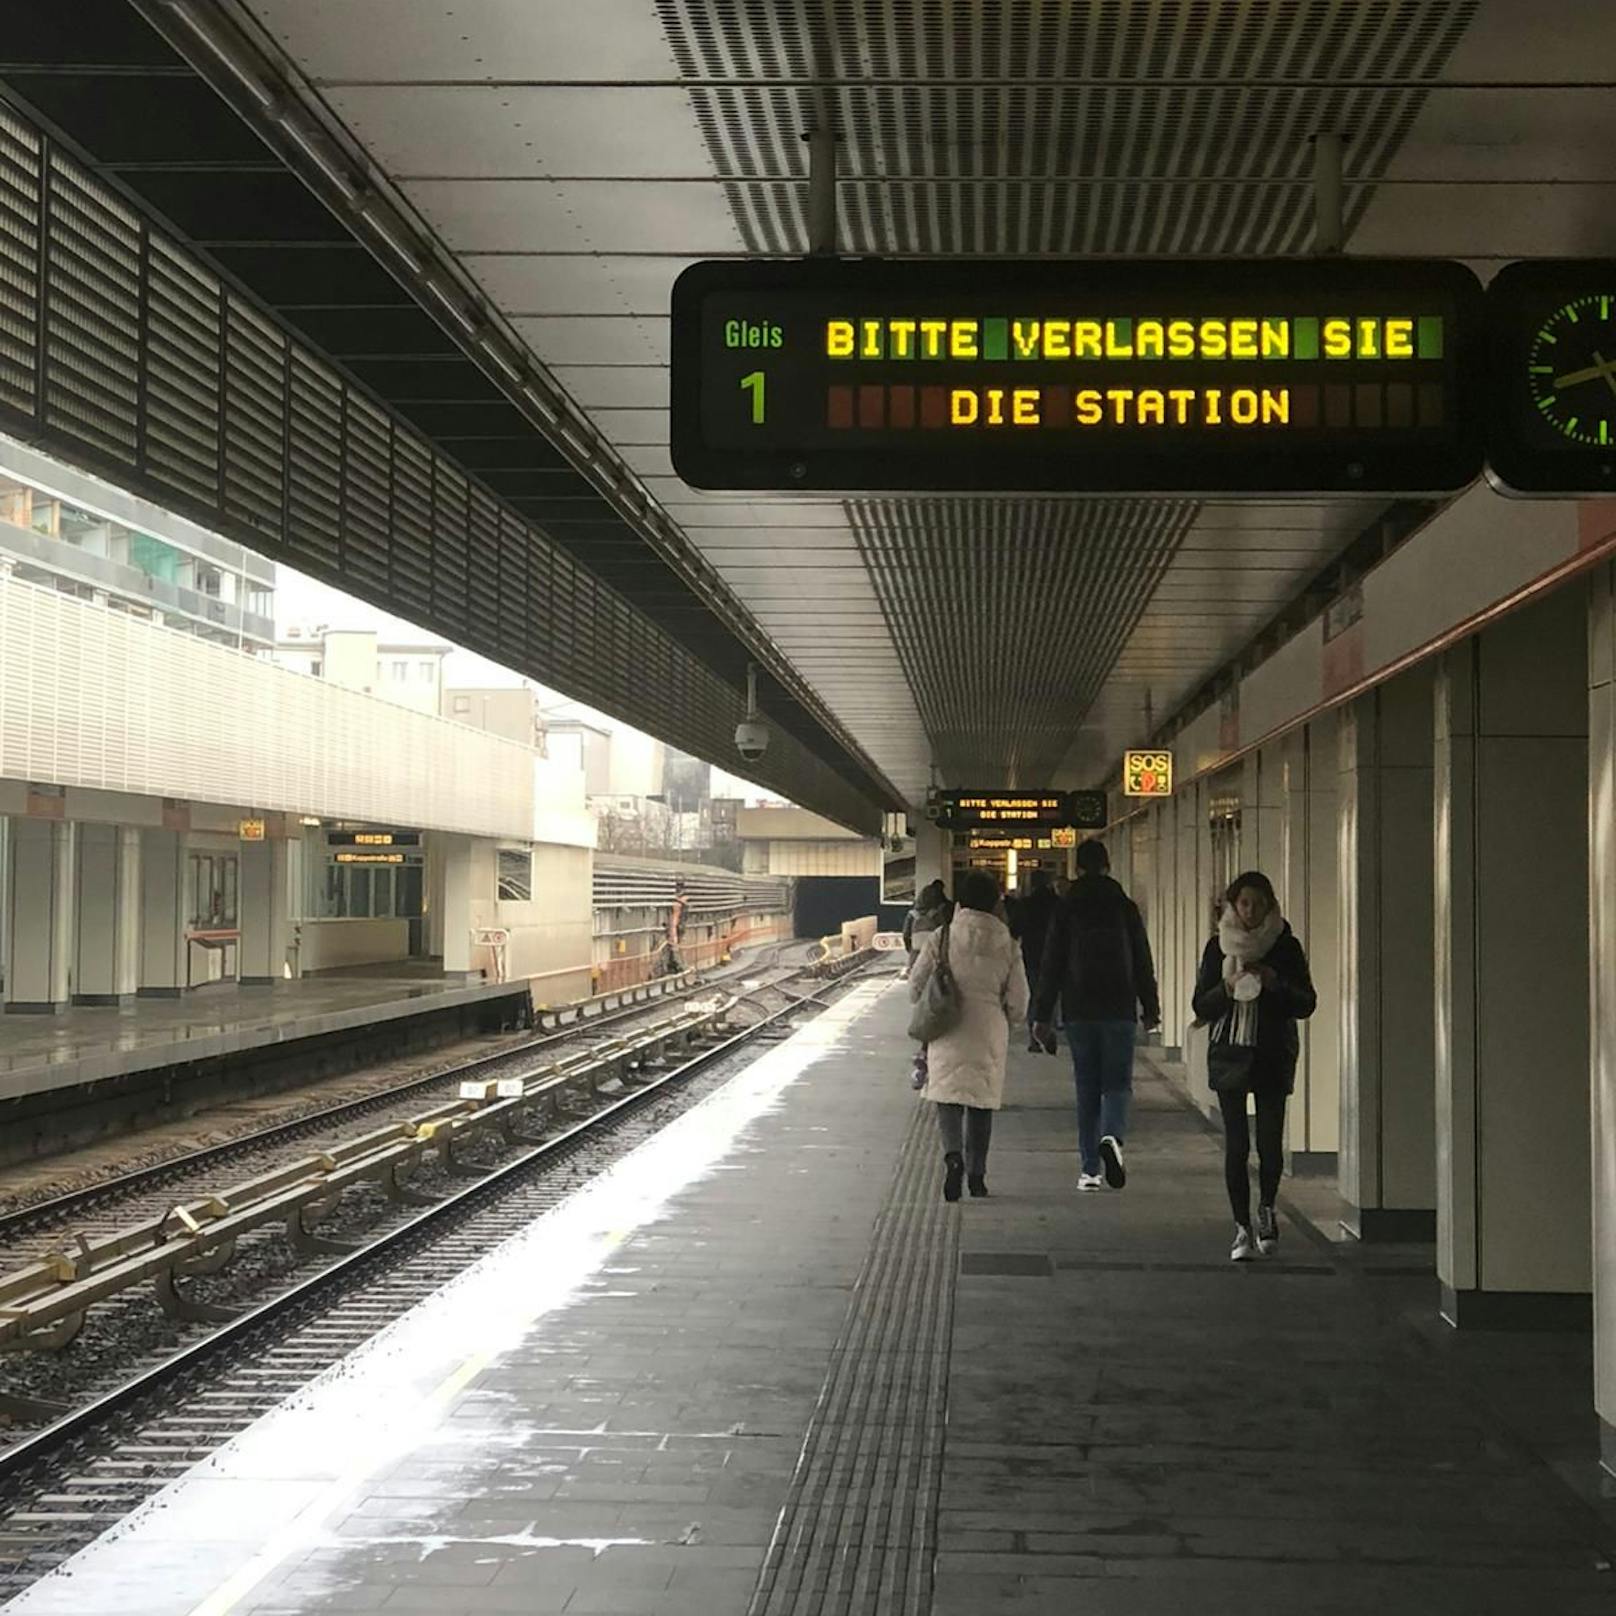 Fahrgäste wurden aufgefordert die Station zu verlassen.